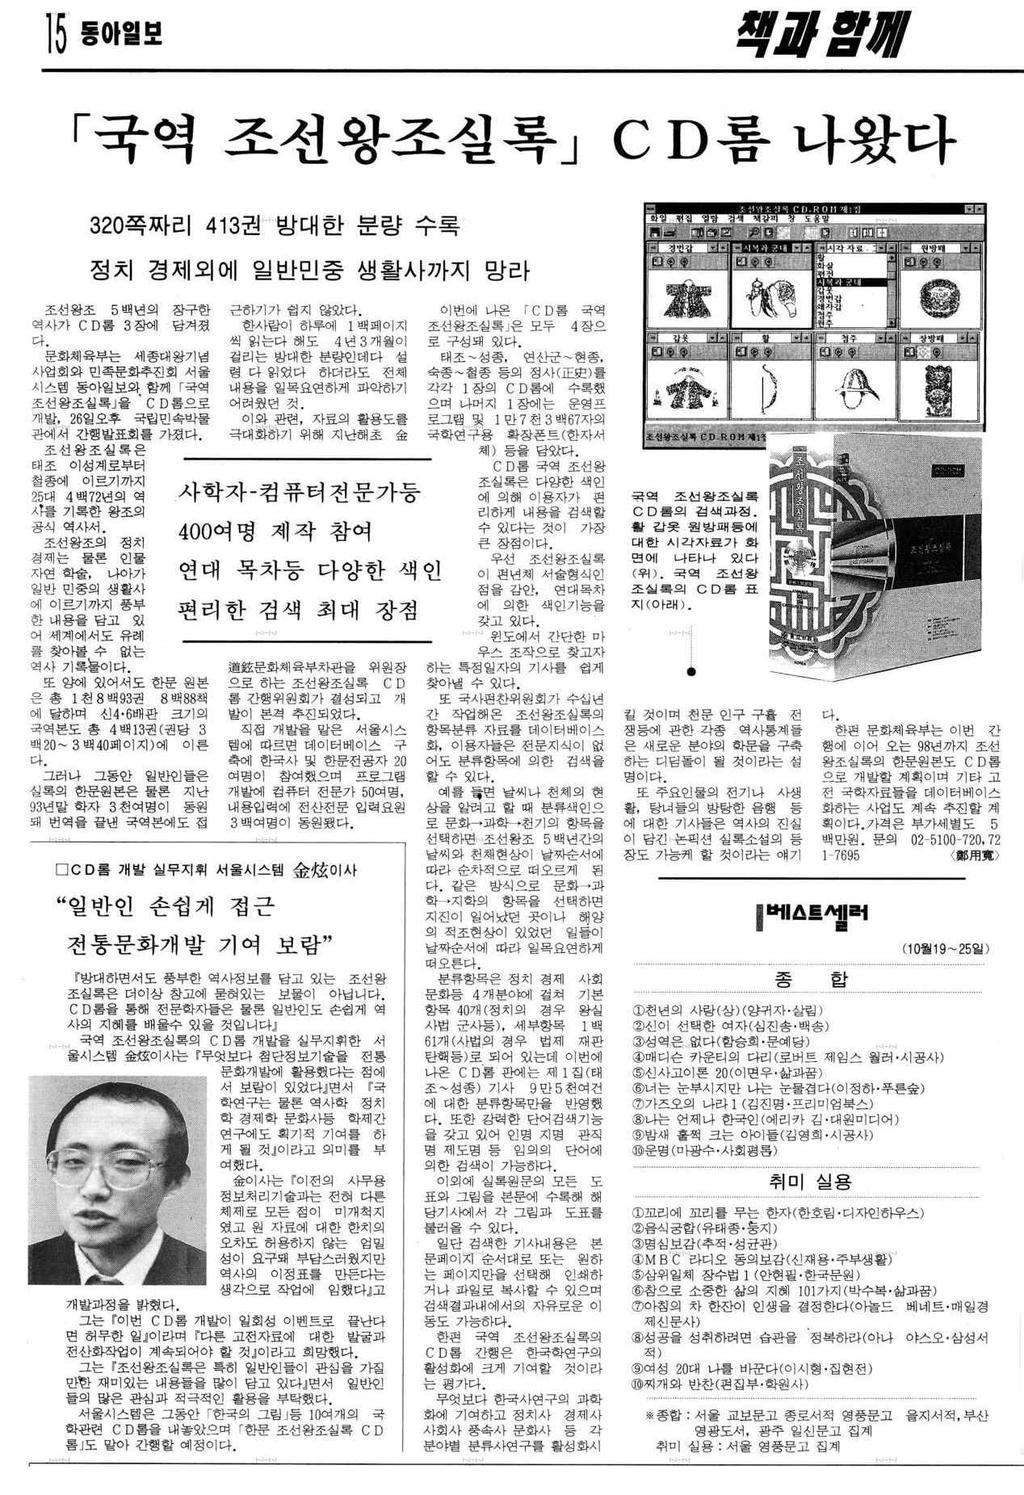 [ 그림 6] 국역조선왕조실록 CD 롬간행보도기사 ( 동아일보 1995. 10. 27.